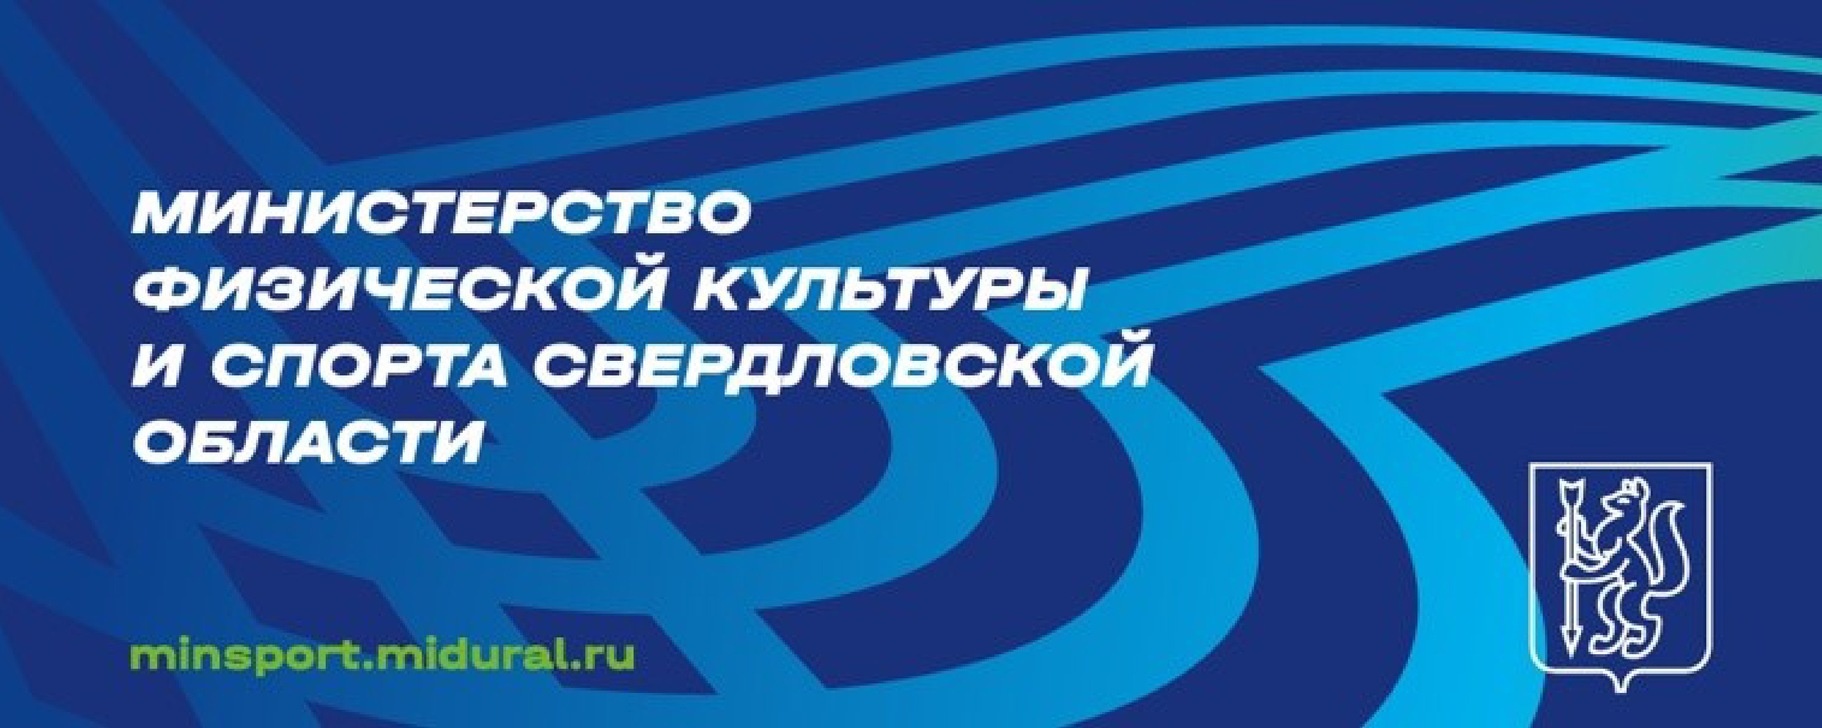 Министерство физической культуры и спорта Свердловской области